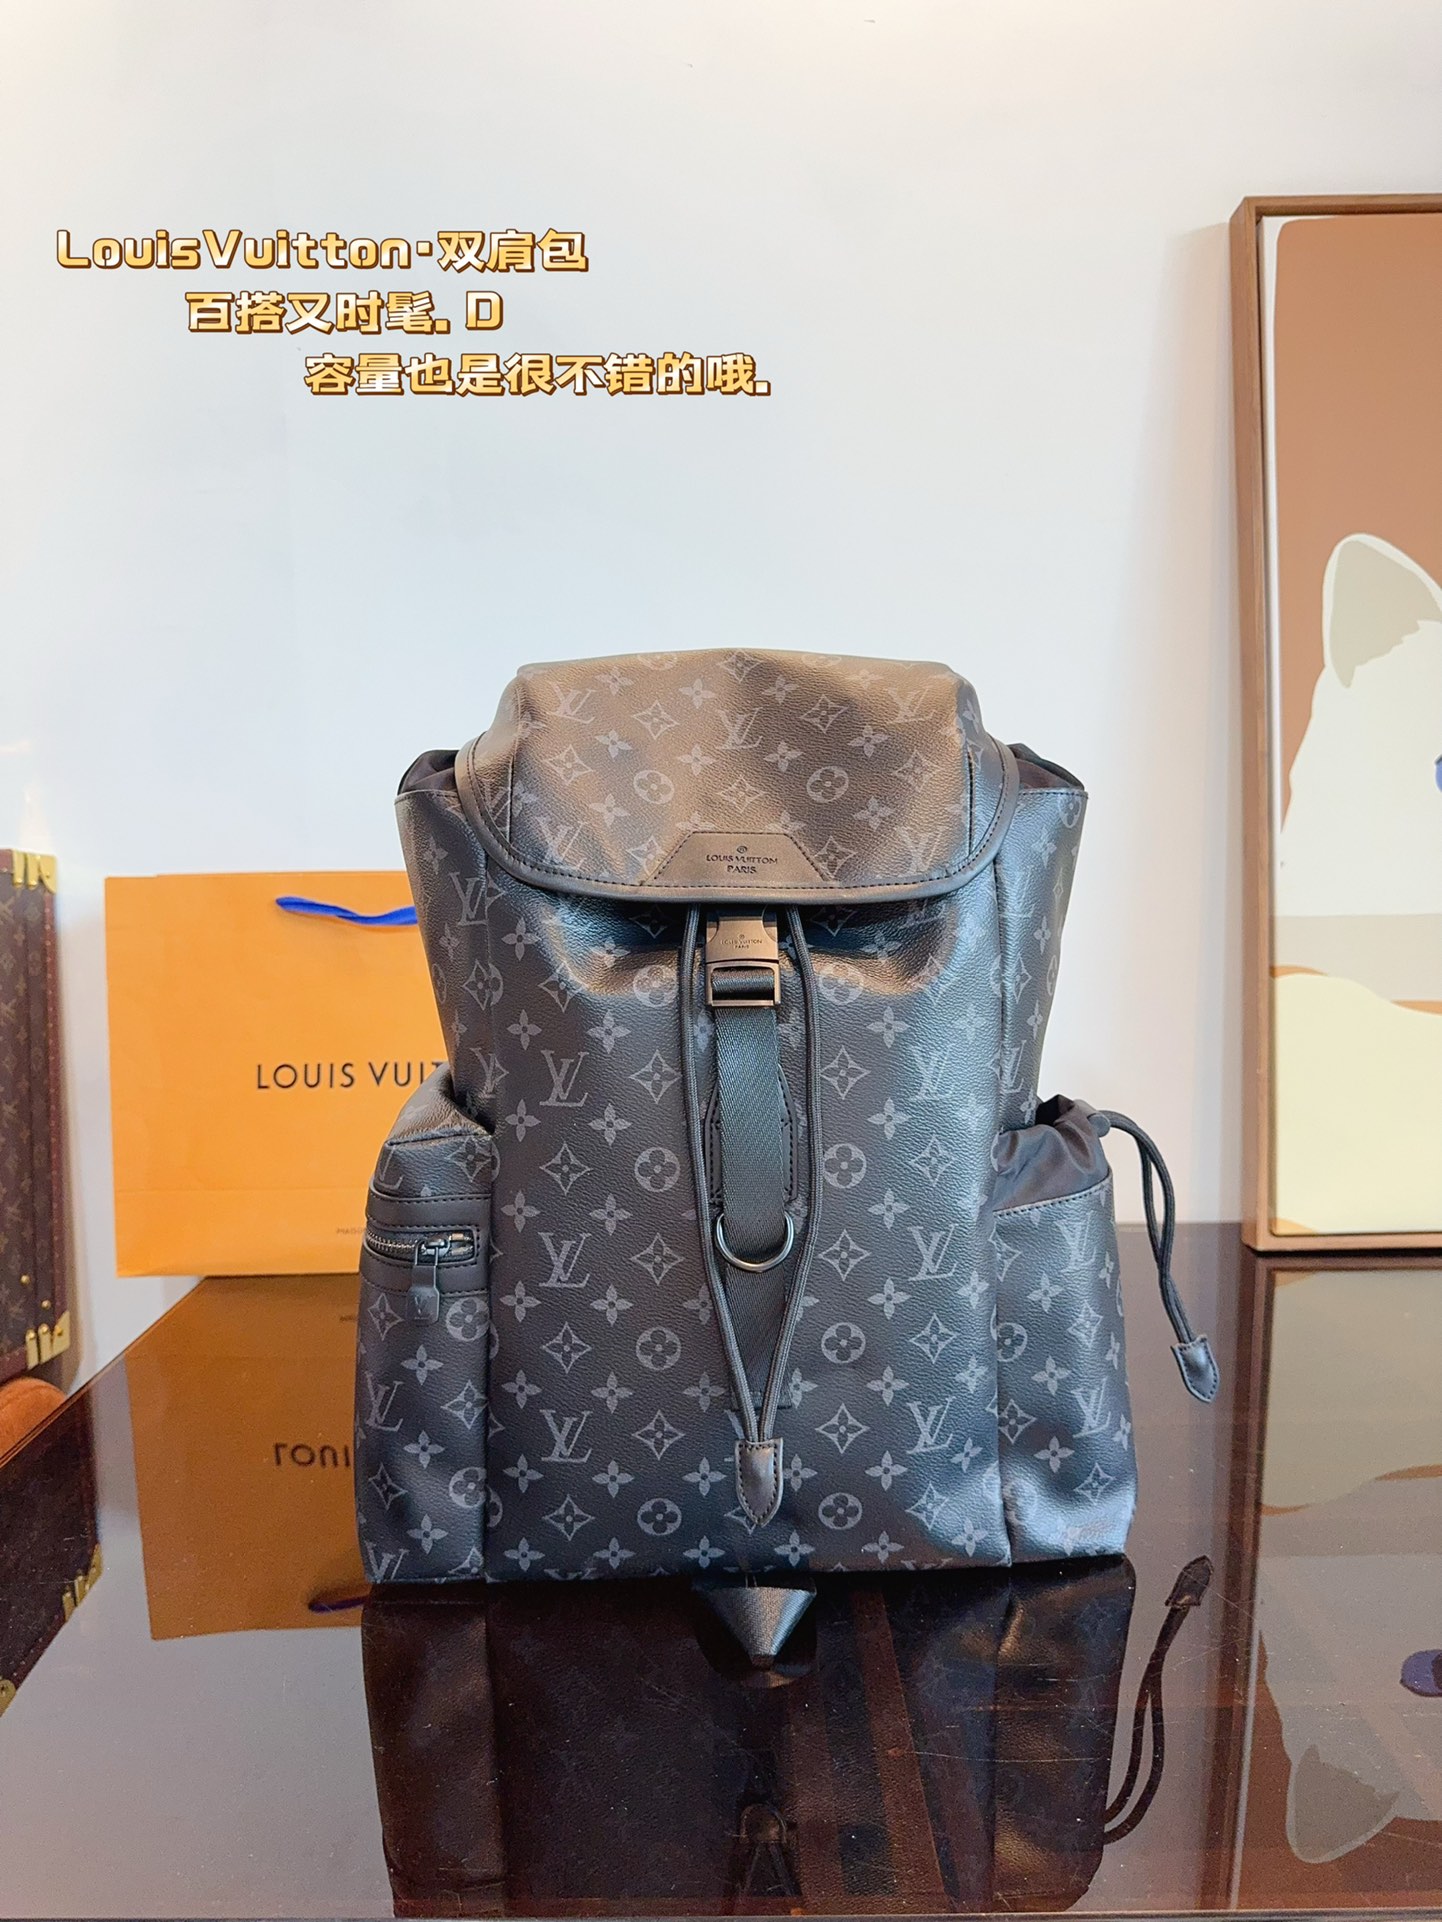 AAAAA+
 Louis Vuitton LV Christopher Taschen Rucksack Bestnote
 Gitter